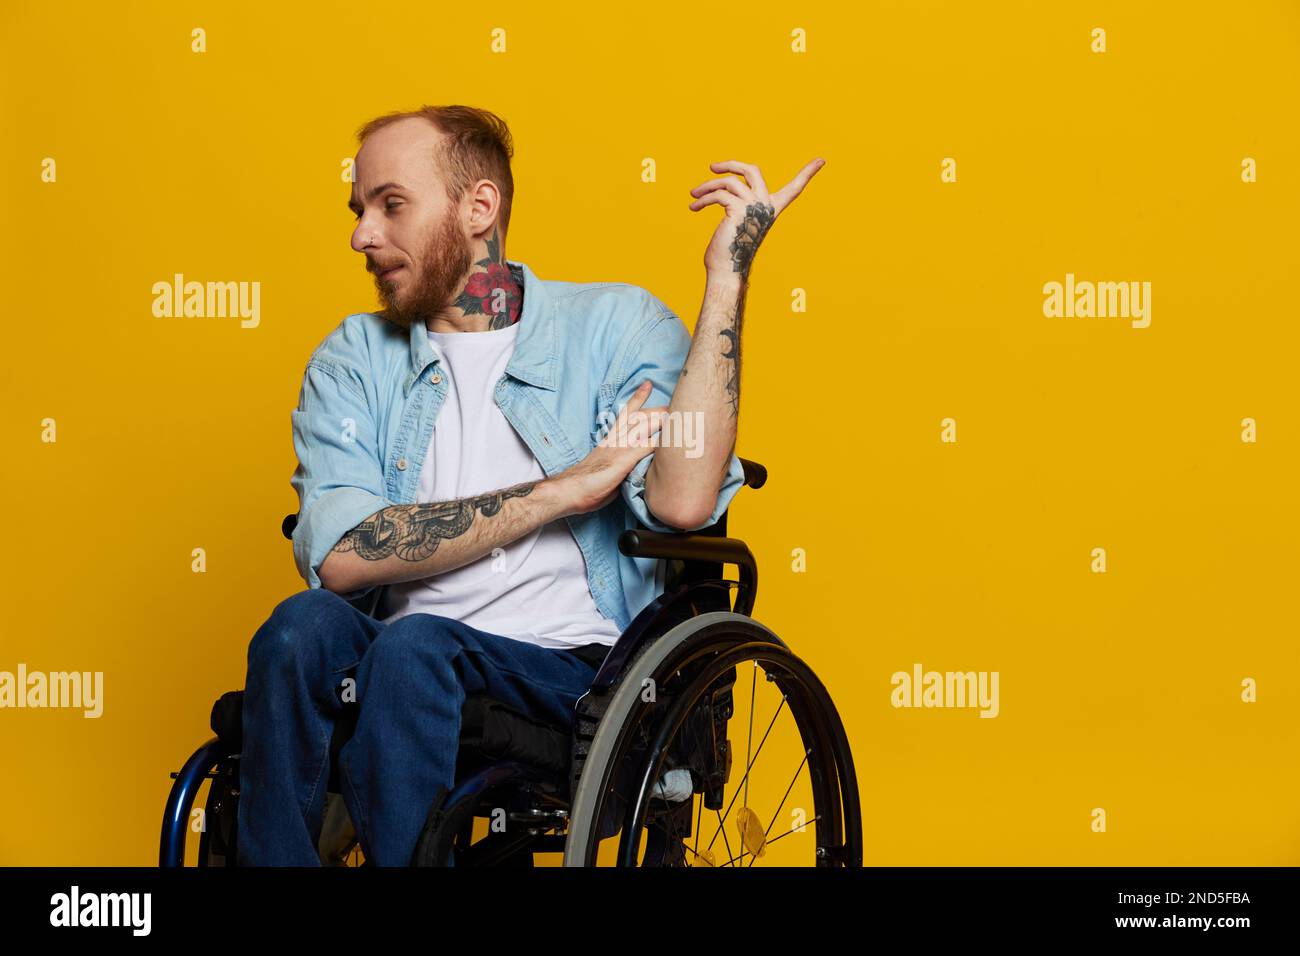 Un homme en fauteuil roulant a des problèmes avec le système musculo-squelettique regarde la caméra montre un doigt dessus, avec des tatouages sur ses mains assis sur un jaune Banque D'Images